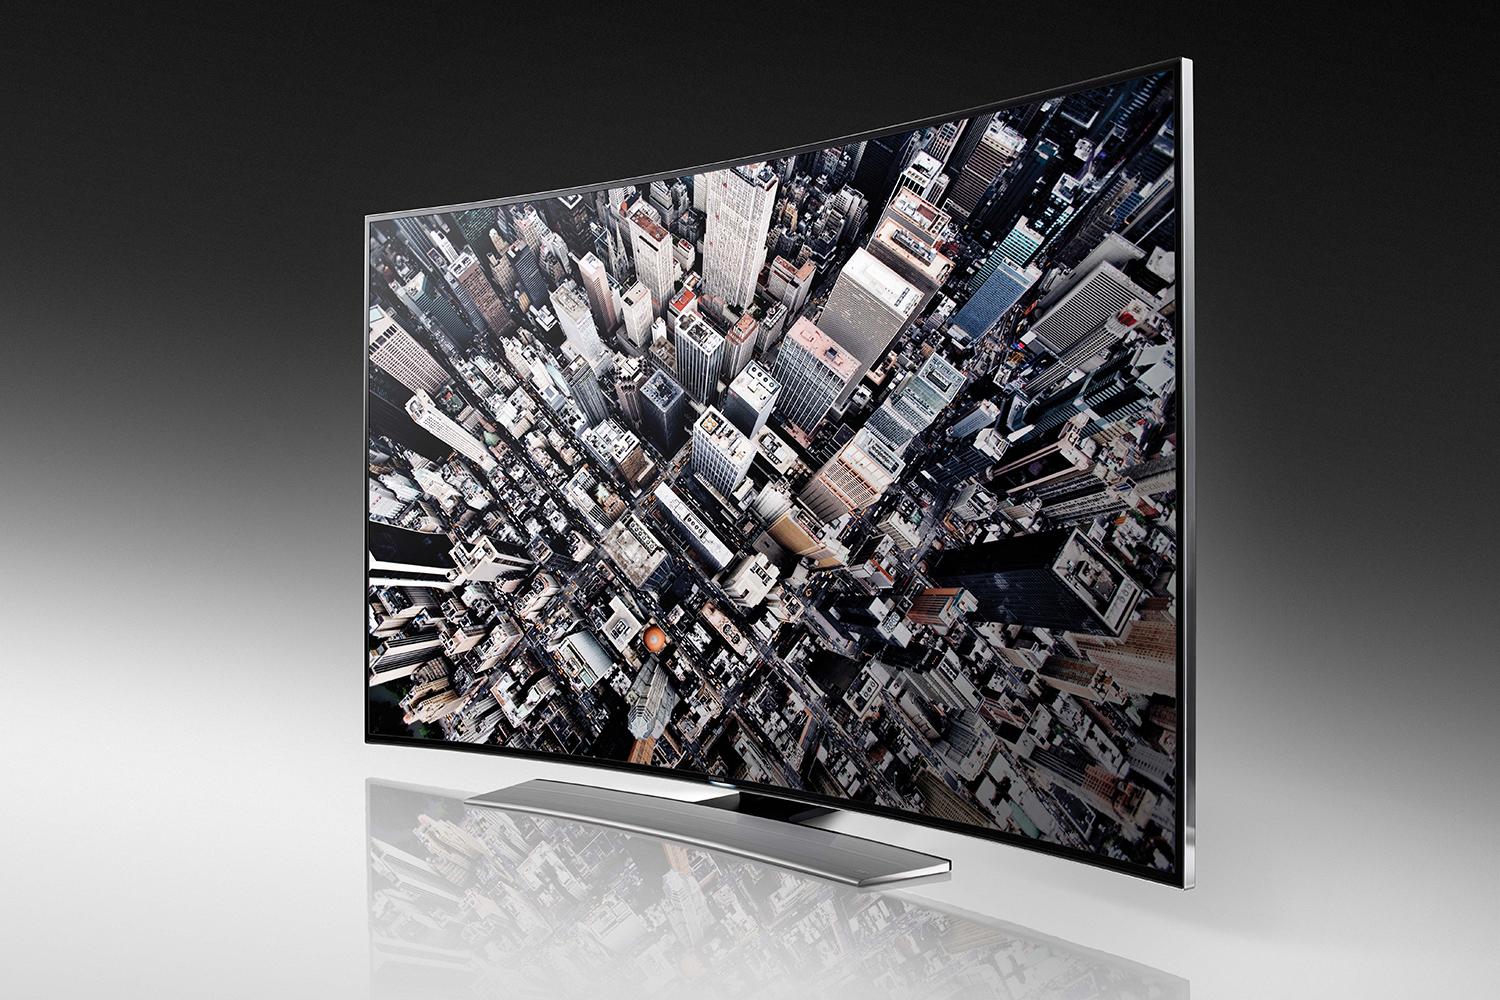 Телевизор самсунг 2014 год. Samsung UHD TV 65 9000. Samsung TV 2014 hu9000. Samsung UHD 65 2015 года. Телевизор Samsung 2014 года выпуска.